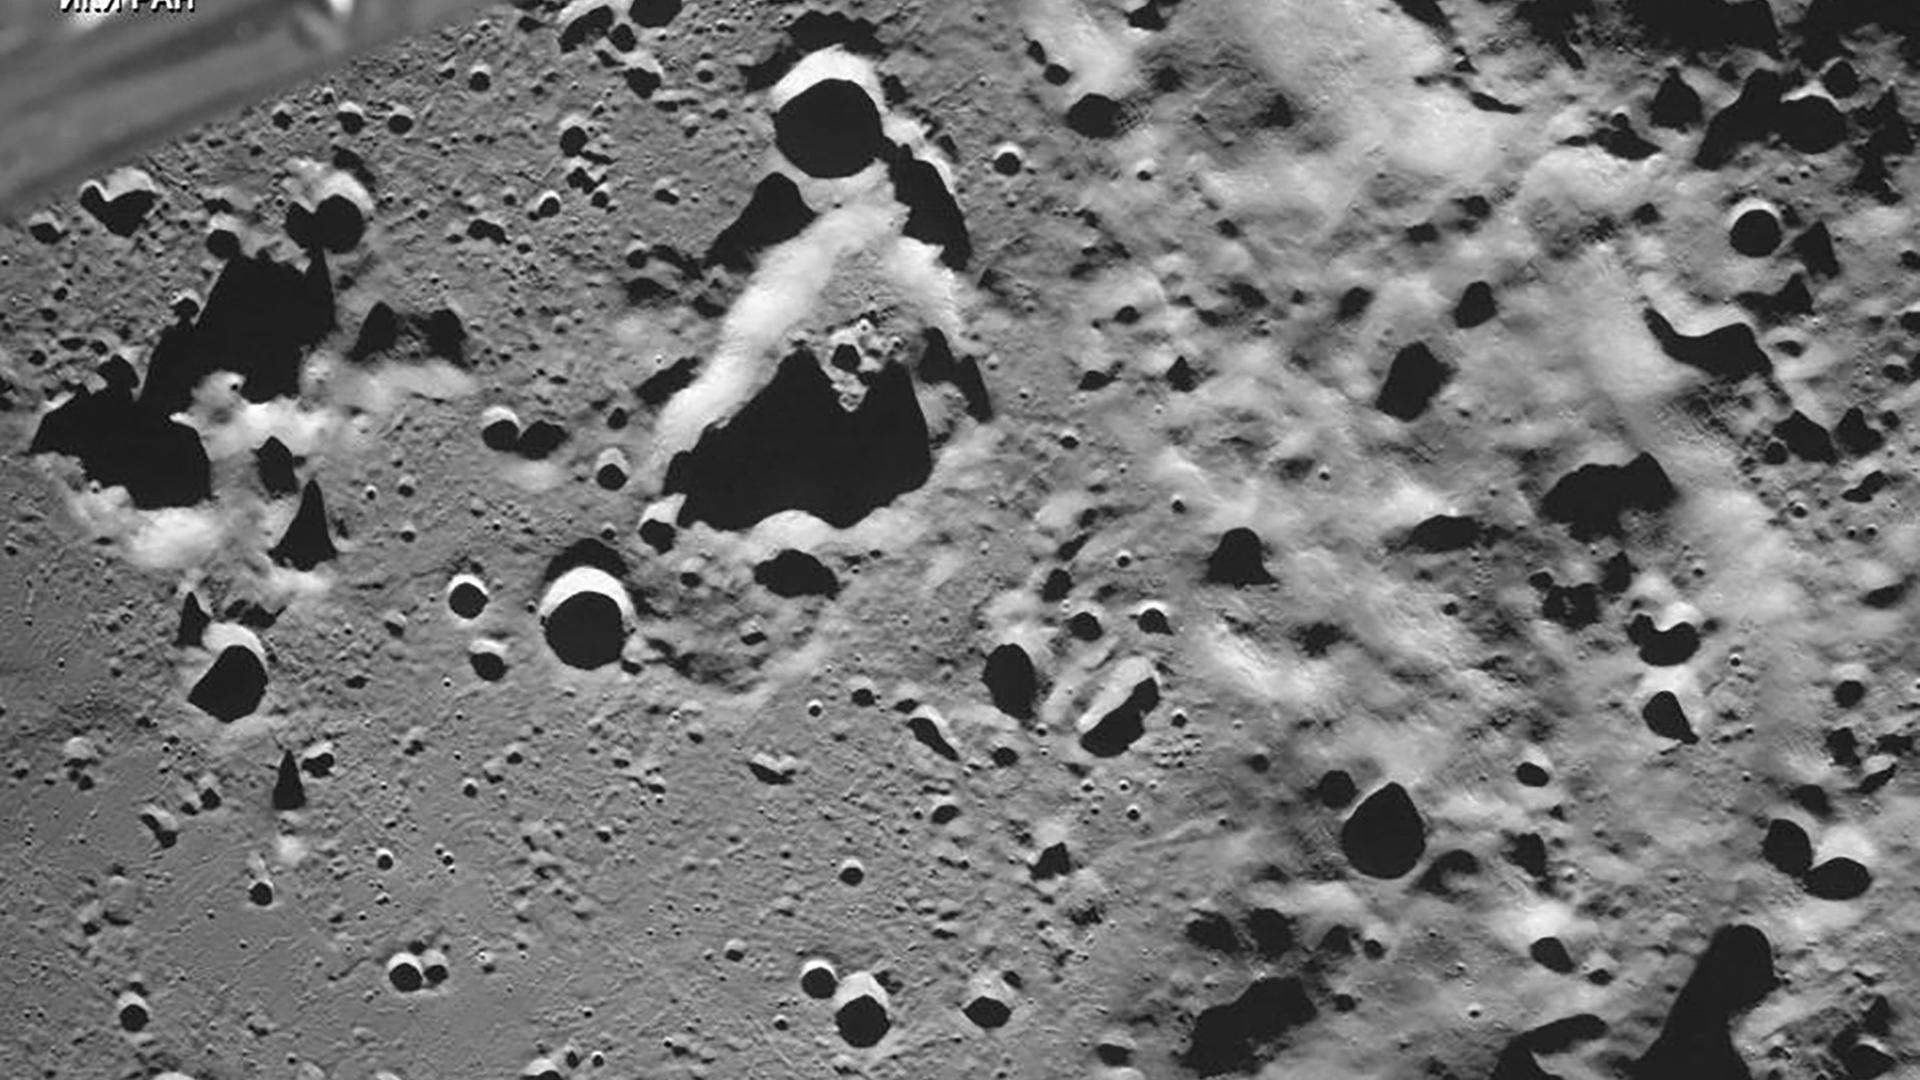 Das Bild zeigt die graue Oberfläche des Modes mit zahlreichen Kratern und Unebenheiten gesehen von der Umlaufbahn des Erdtrabanten aus.